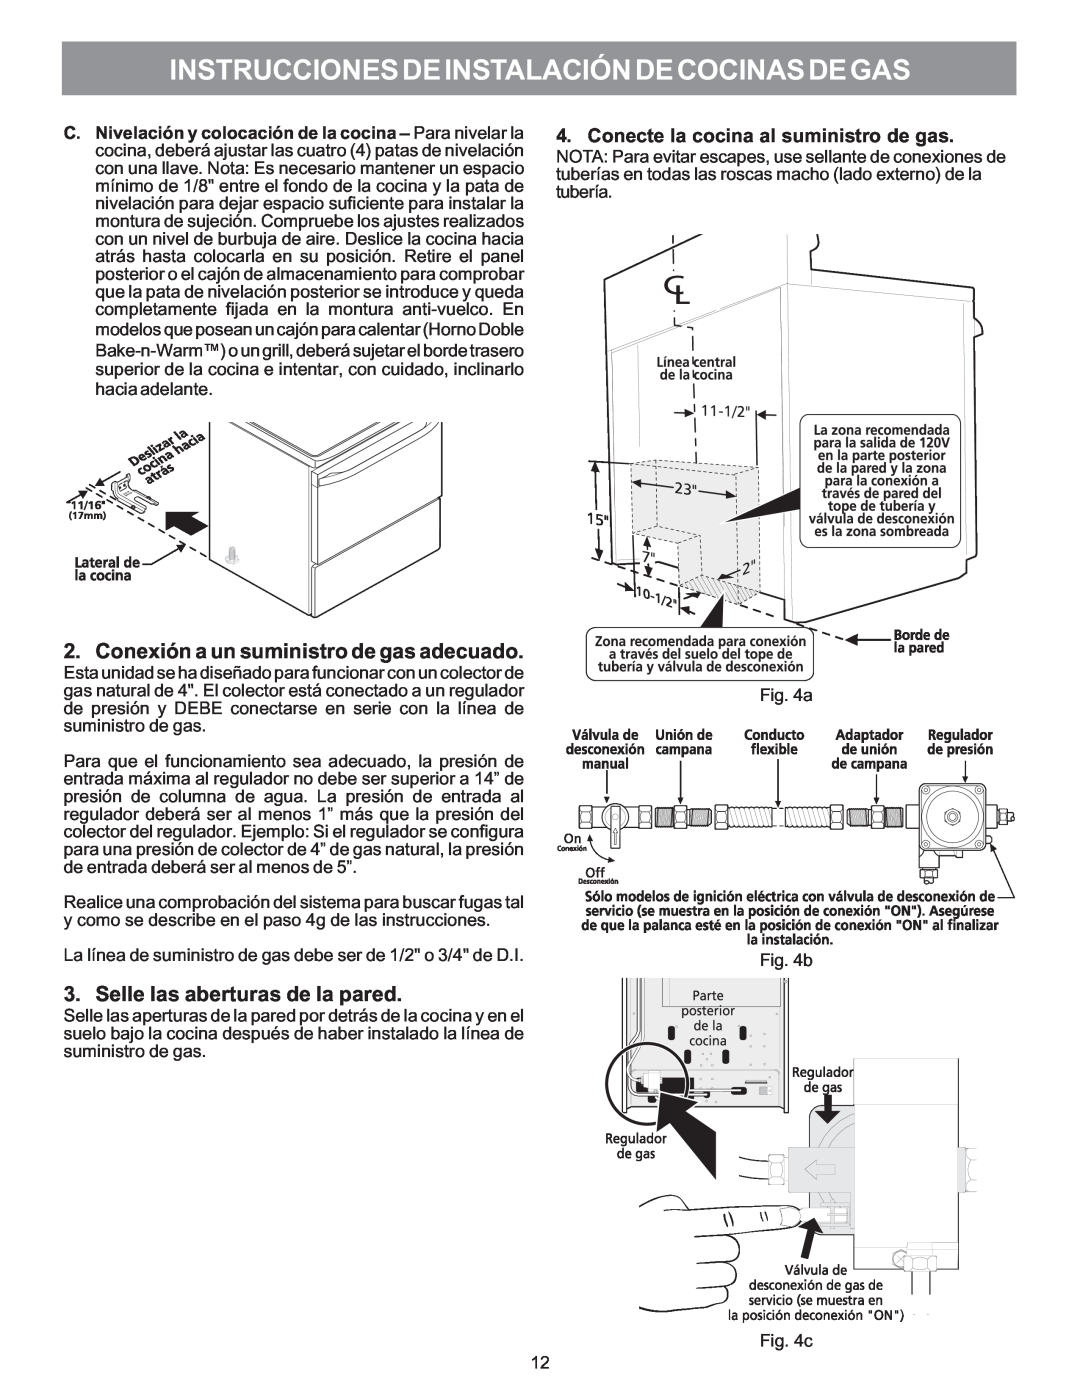 Electrolux 316469104 installation instructions Conexión a un suministro de gas adecuado, Selle las aberturas de la pared 